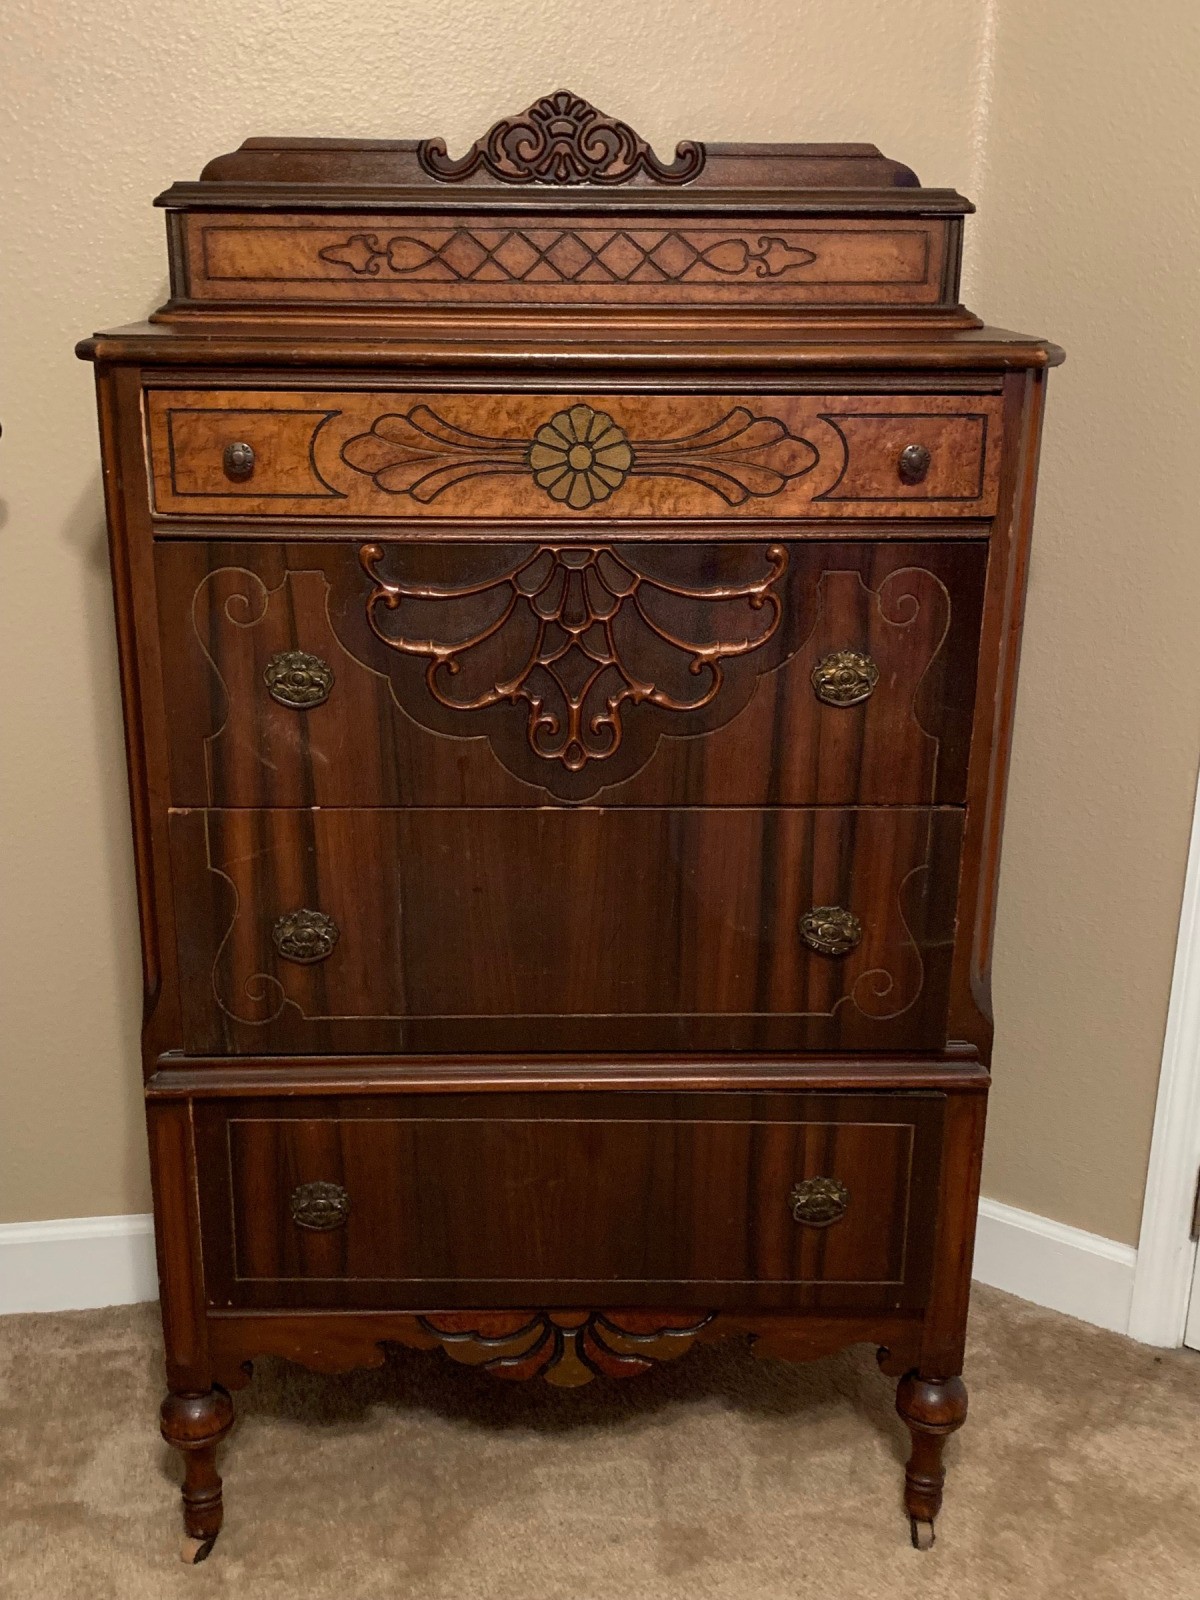 Value Of An Antique Dresser Thriftyfun